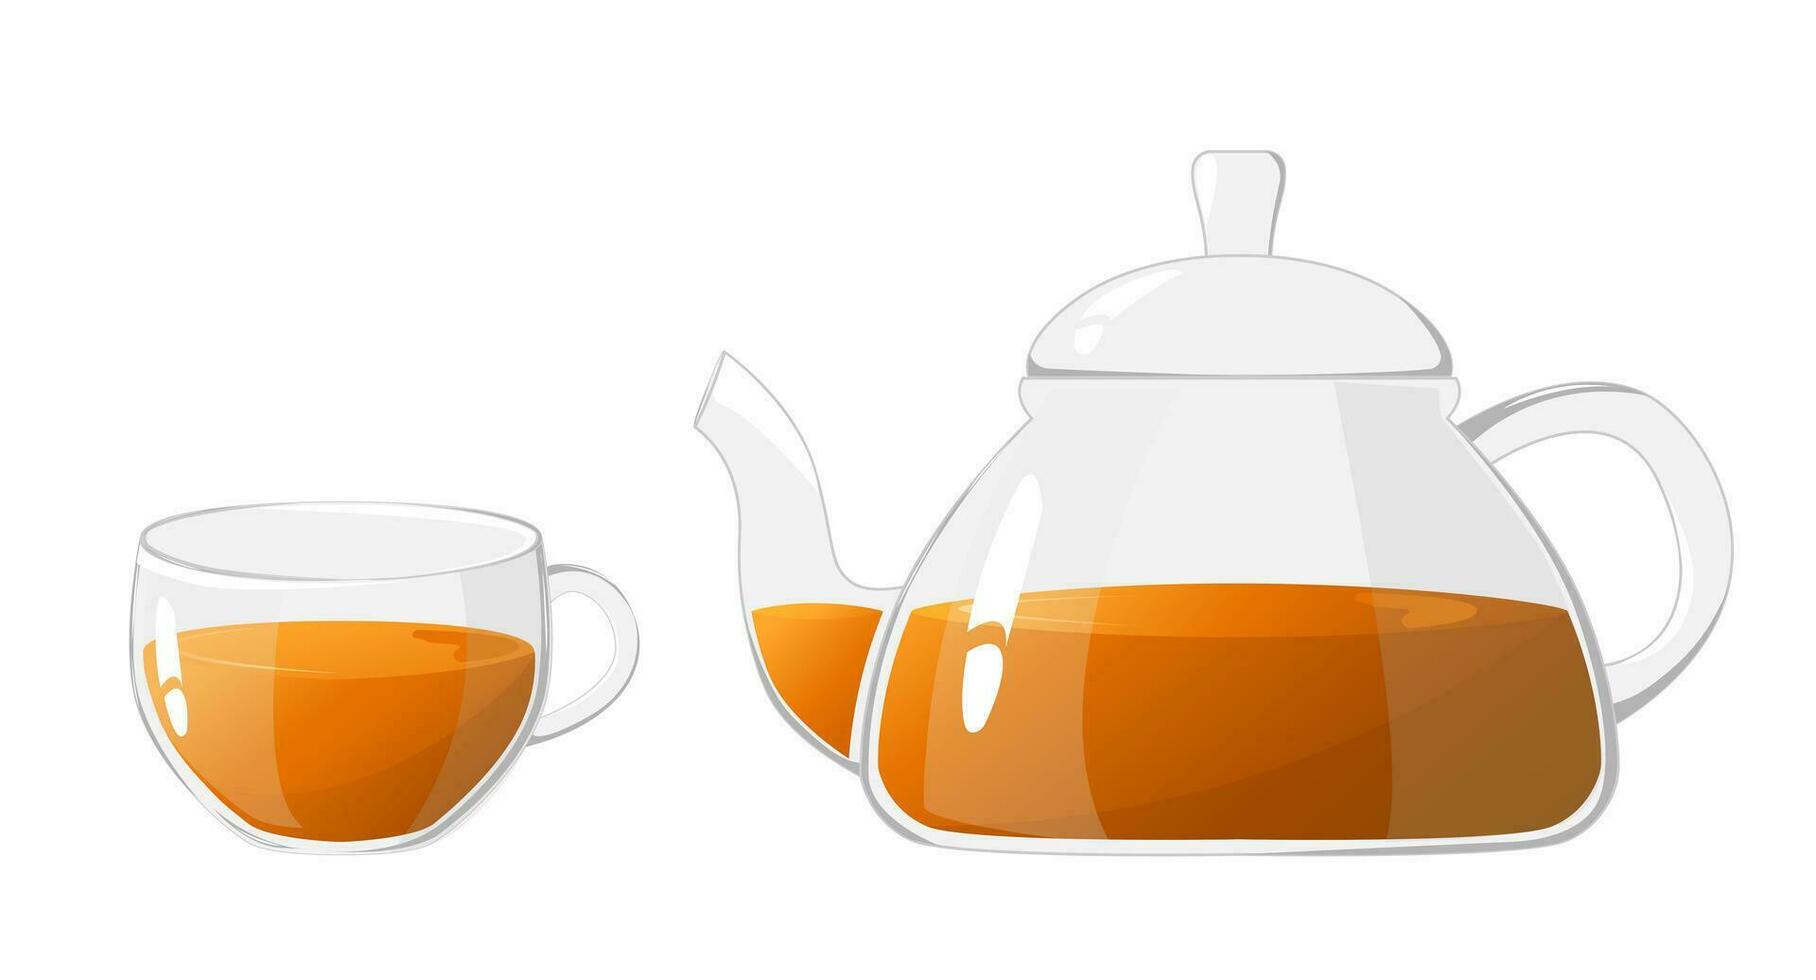 glas tekanna och kopp med te. transparent glas tekanna och kopp. glas te vattenkokare för kokande vatten, porslin för te ceremoni på Hem. friska drycker begrepp vektor